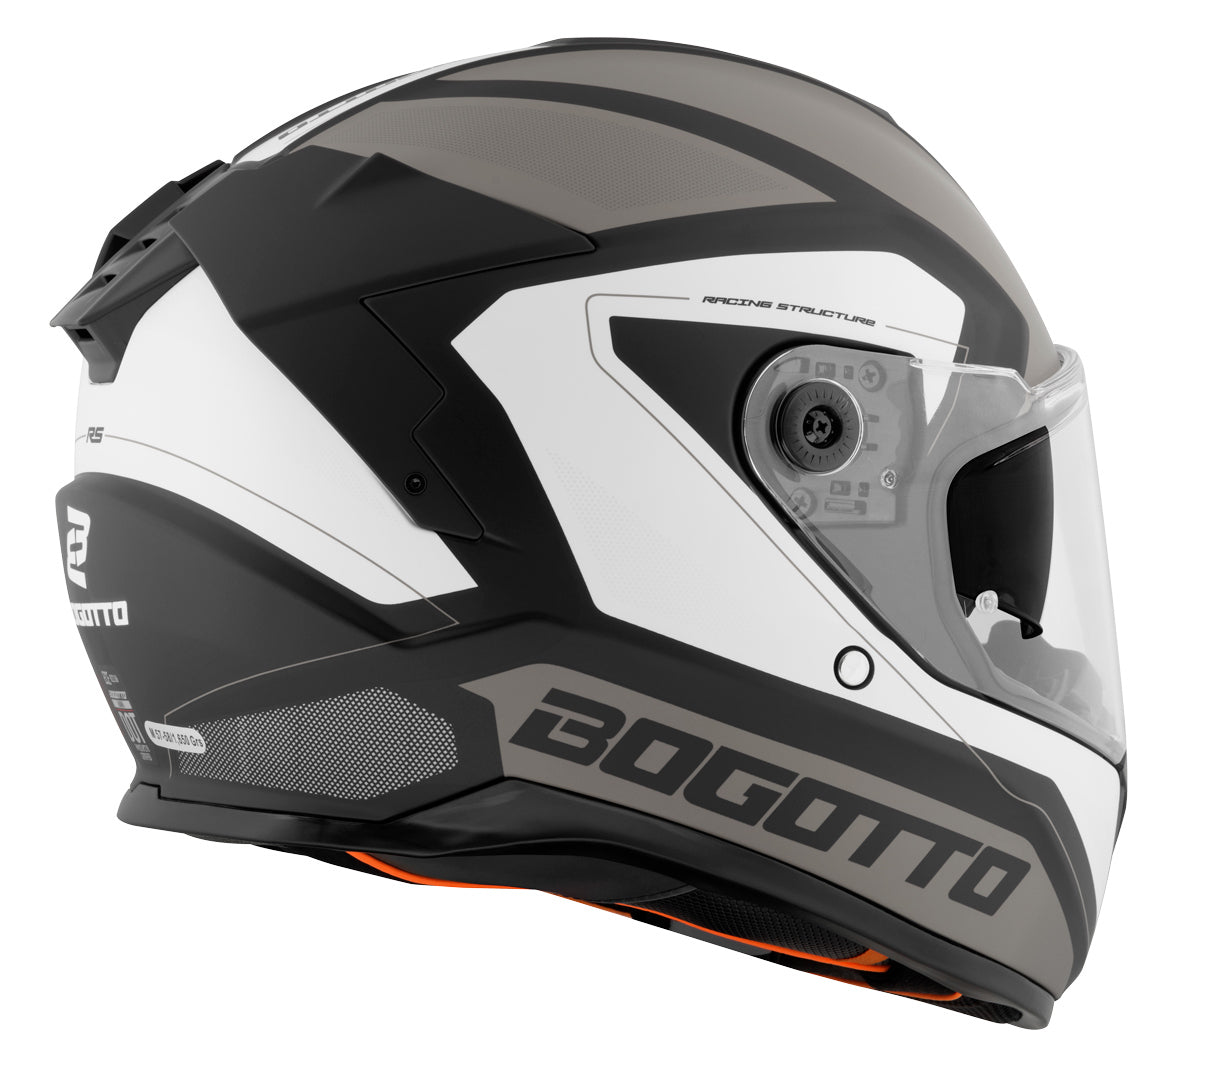 Bogotto FF122 BGT Helmet#color_grey-white